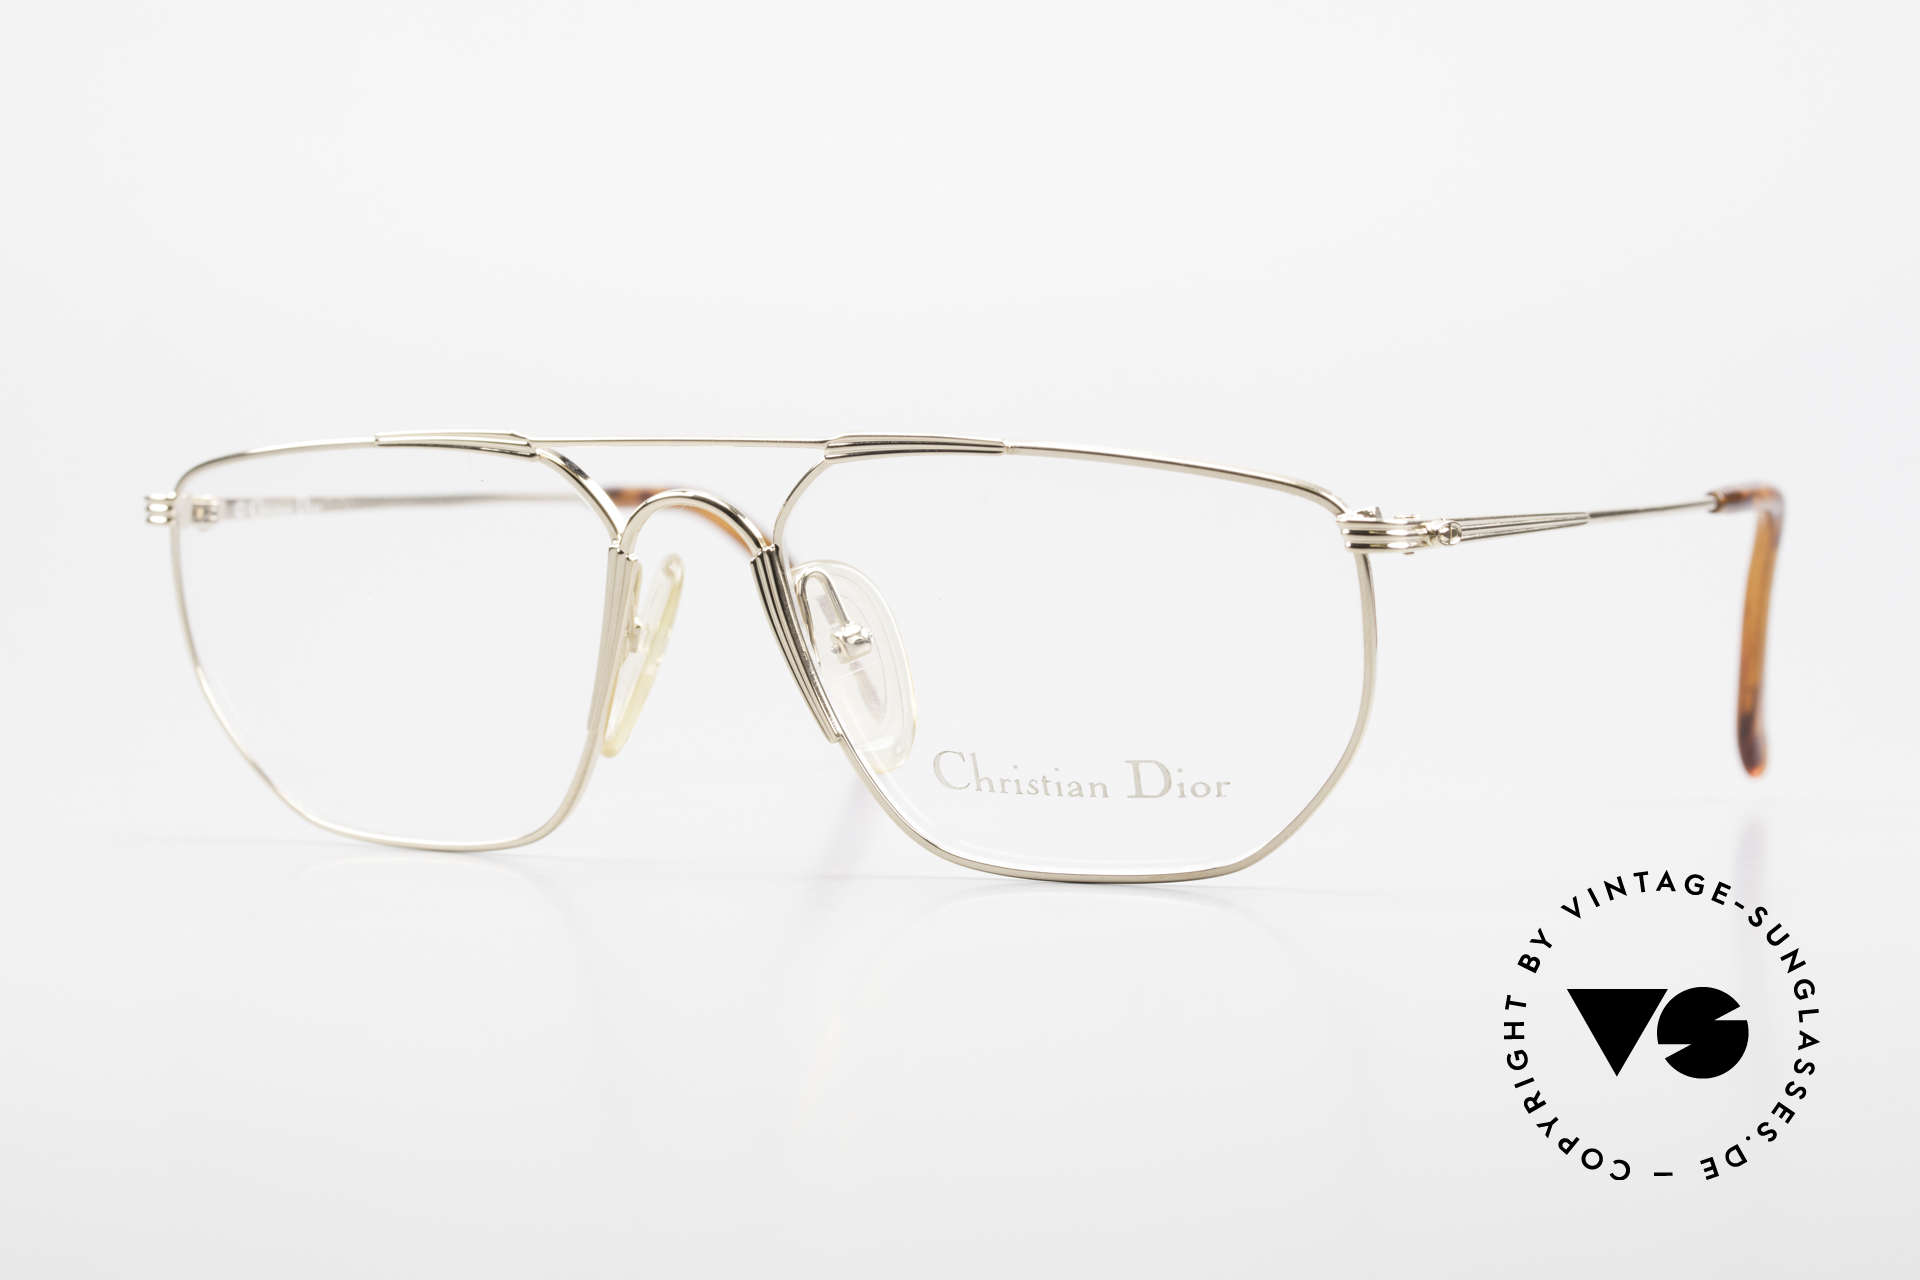 dior metal frame glasses